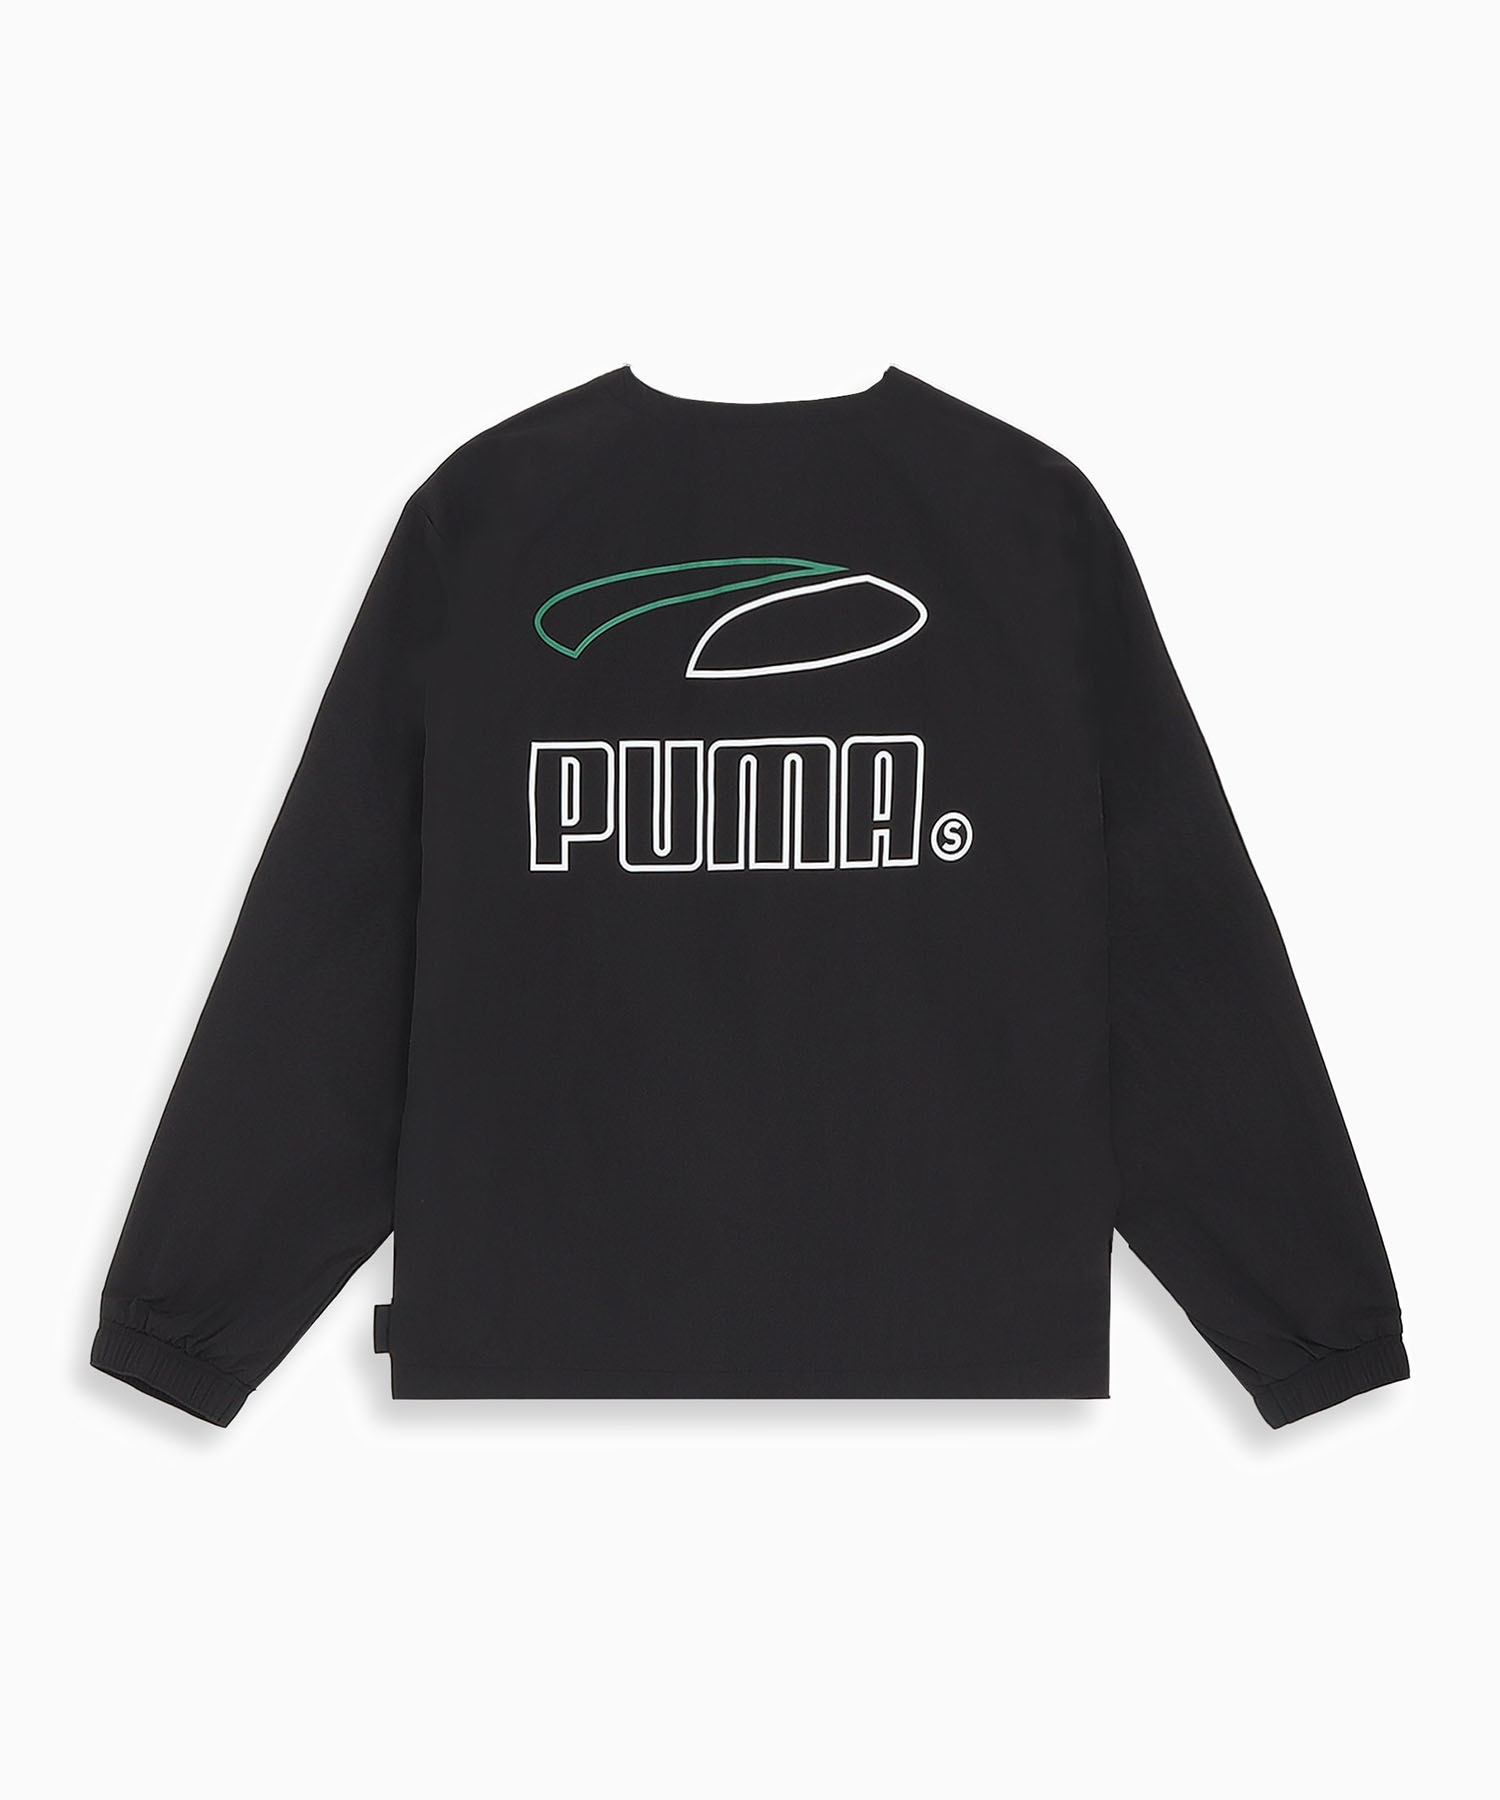 【マトメガイ対象】PUMA プーマ スケートボーディング メンズ ウーブンシャツ スケートボード 625690(17-M)